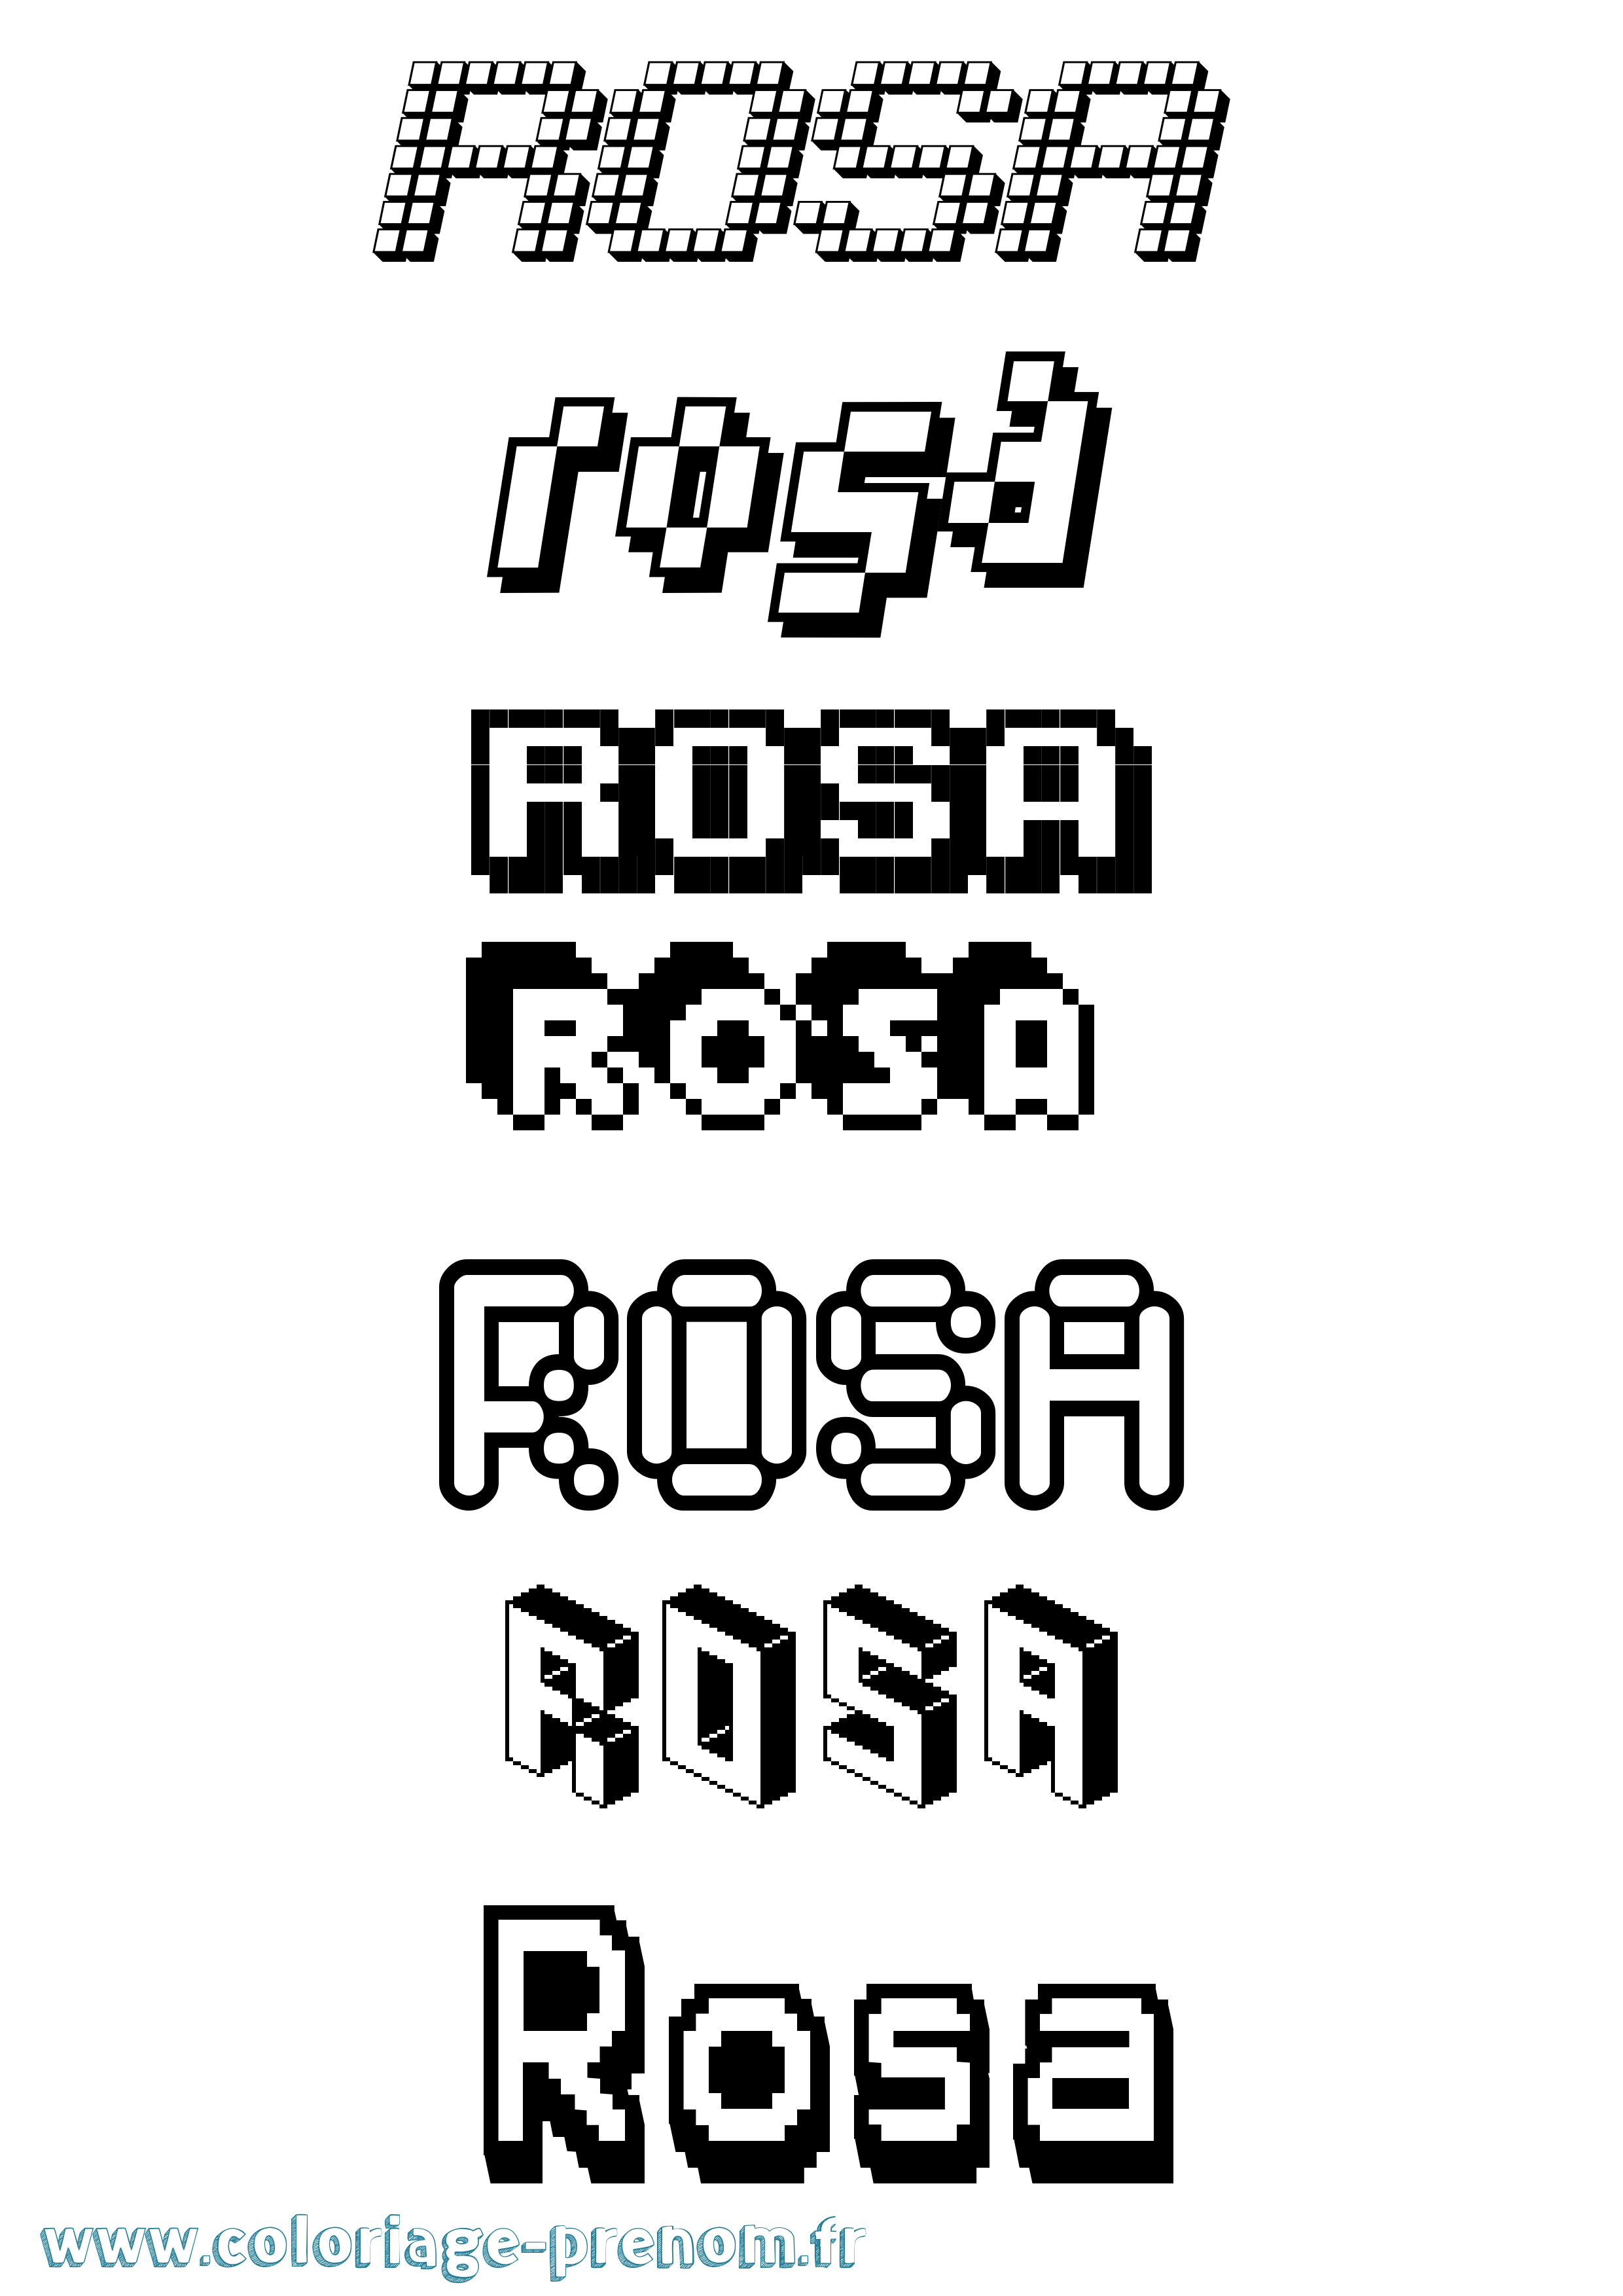 Coloriage prénom Rosa